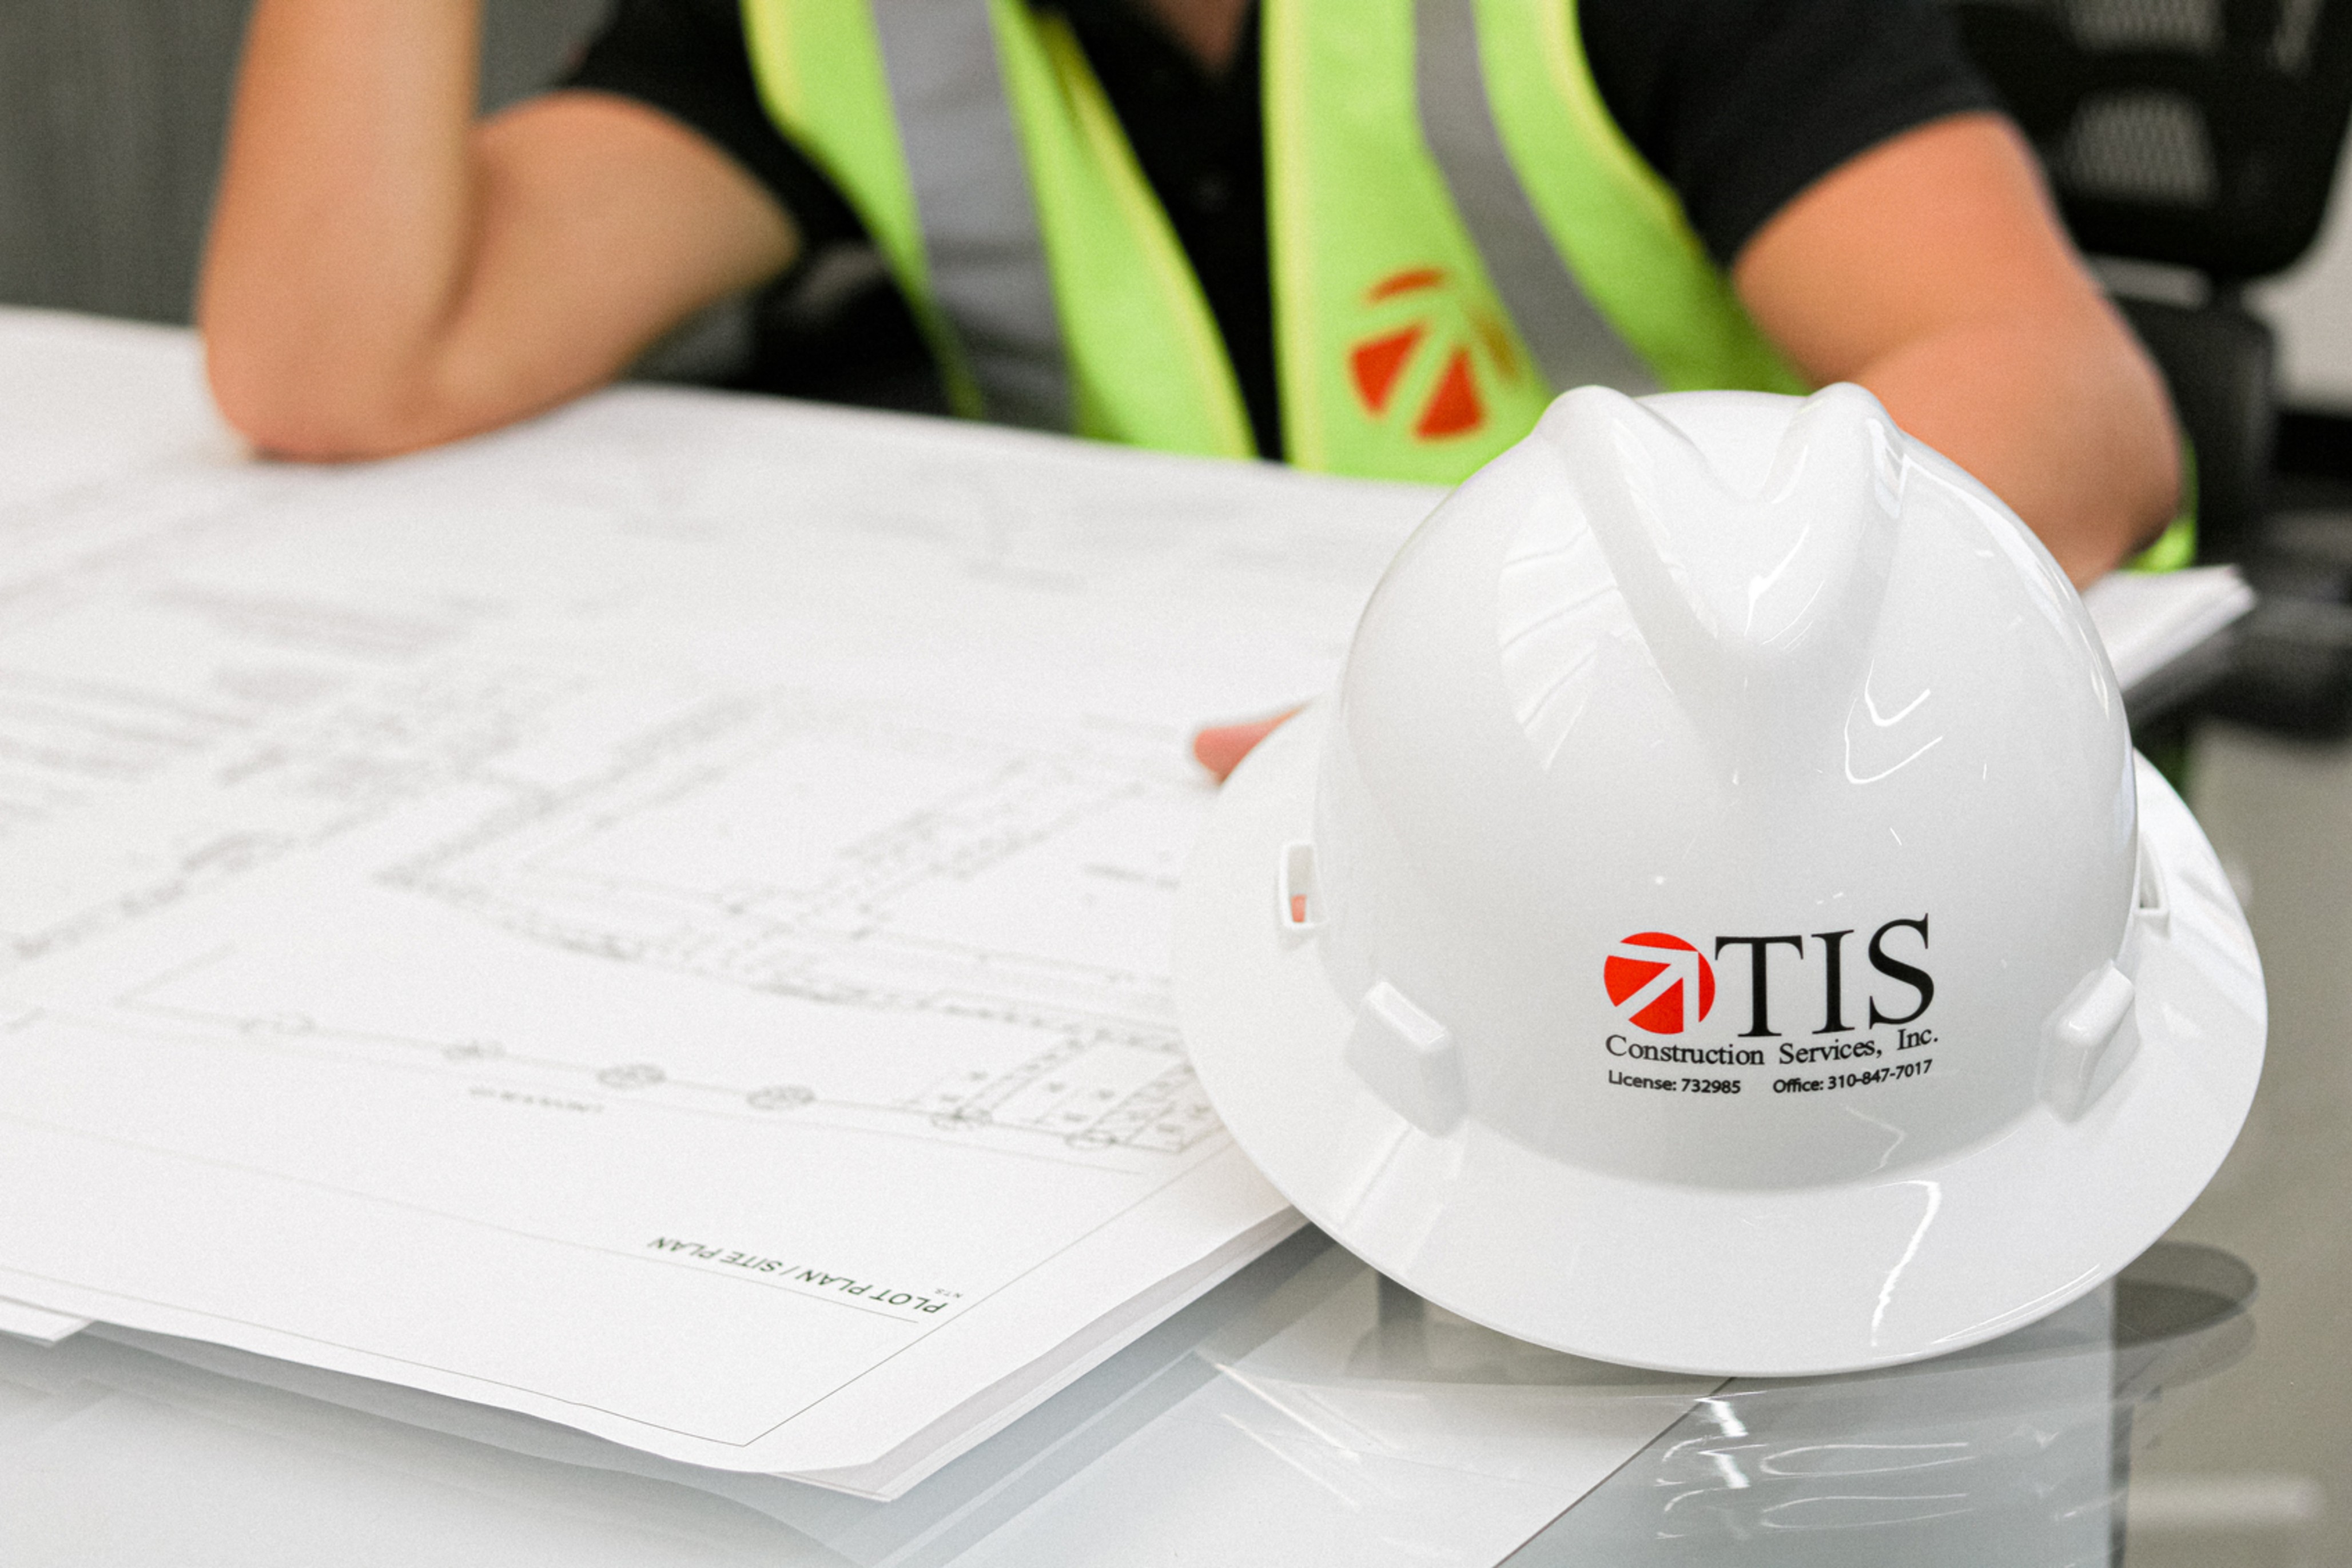 TIS Construction Services, Inc.